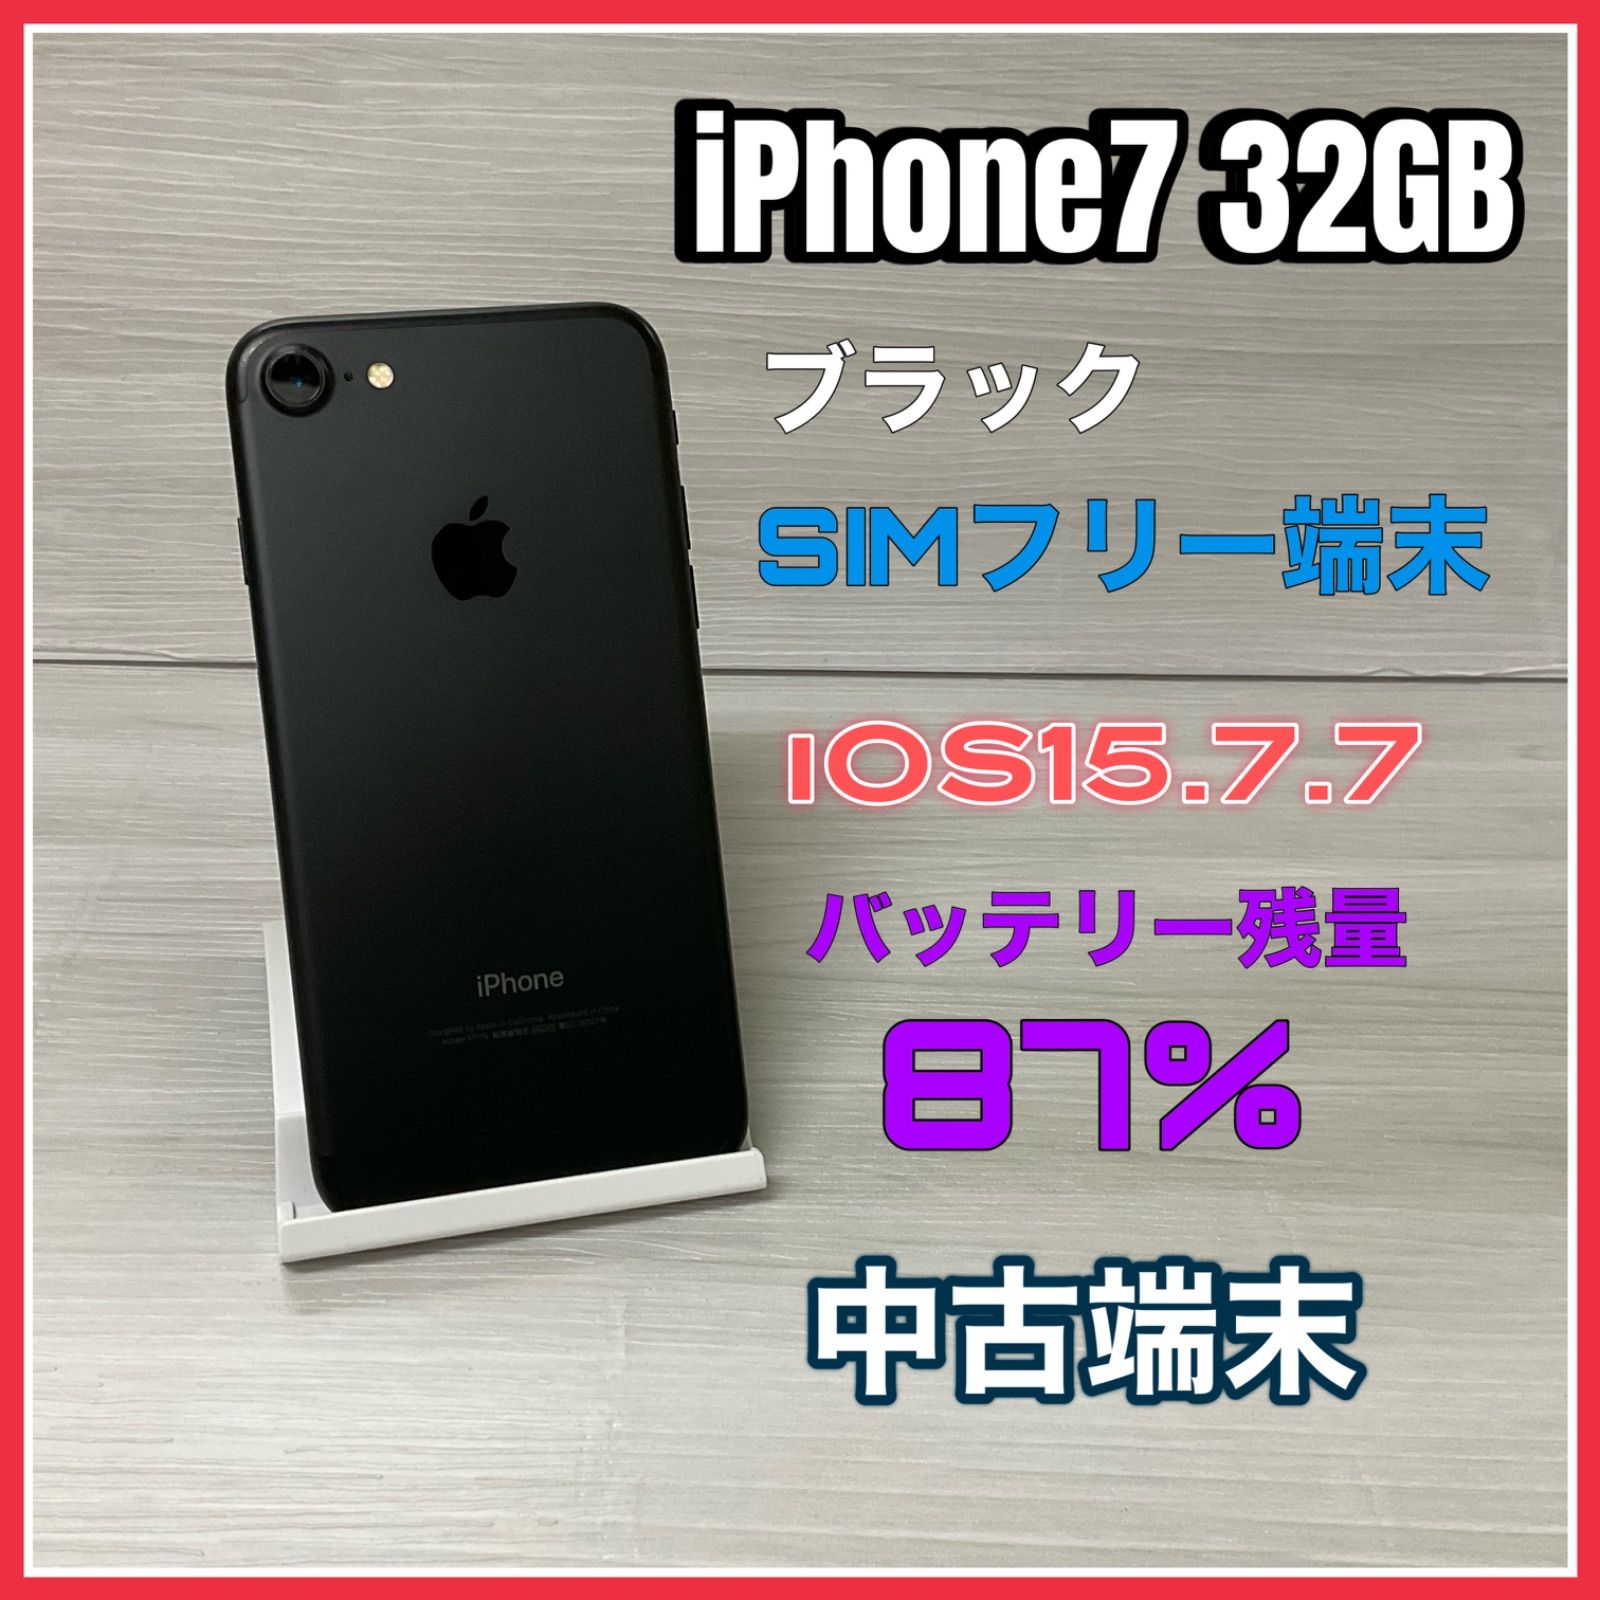 即納分iPhone7 32GB SIMフリー スマートフォン本体